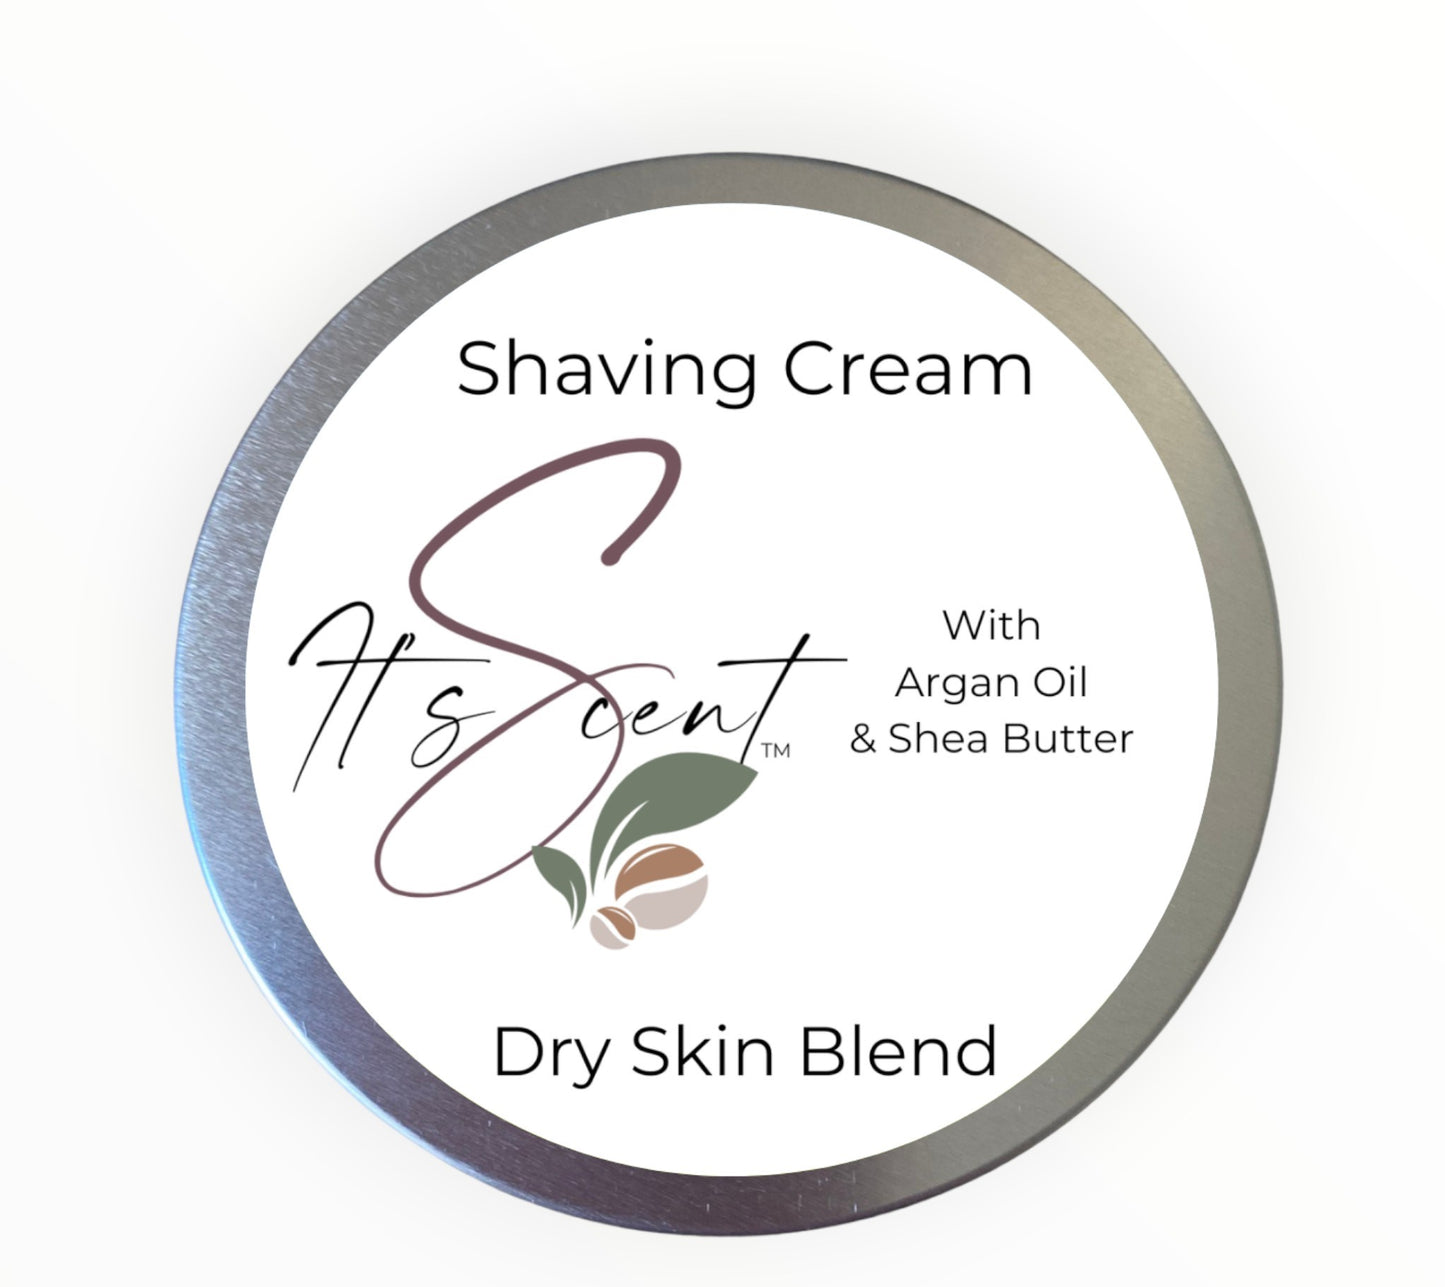 Dry Skin Blend Shaving Cream